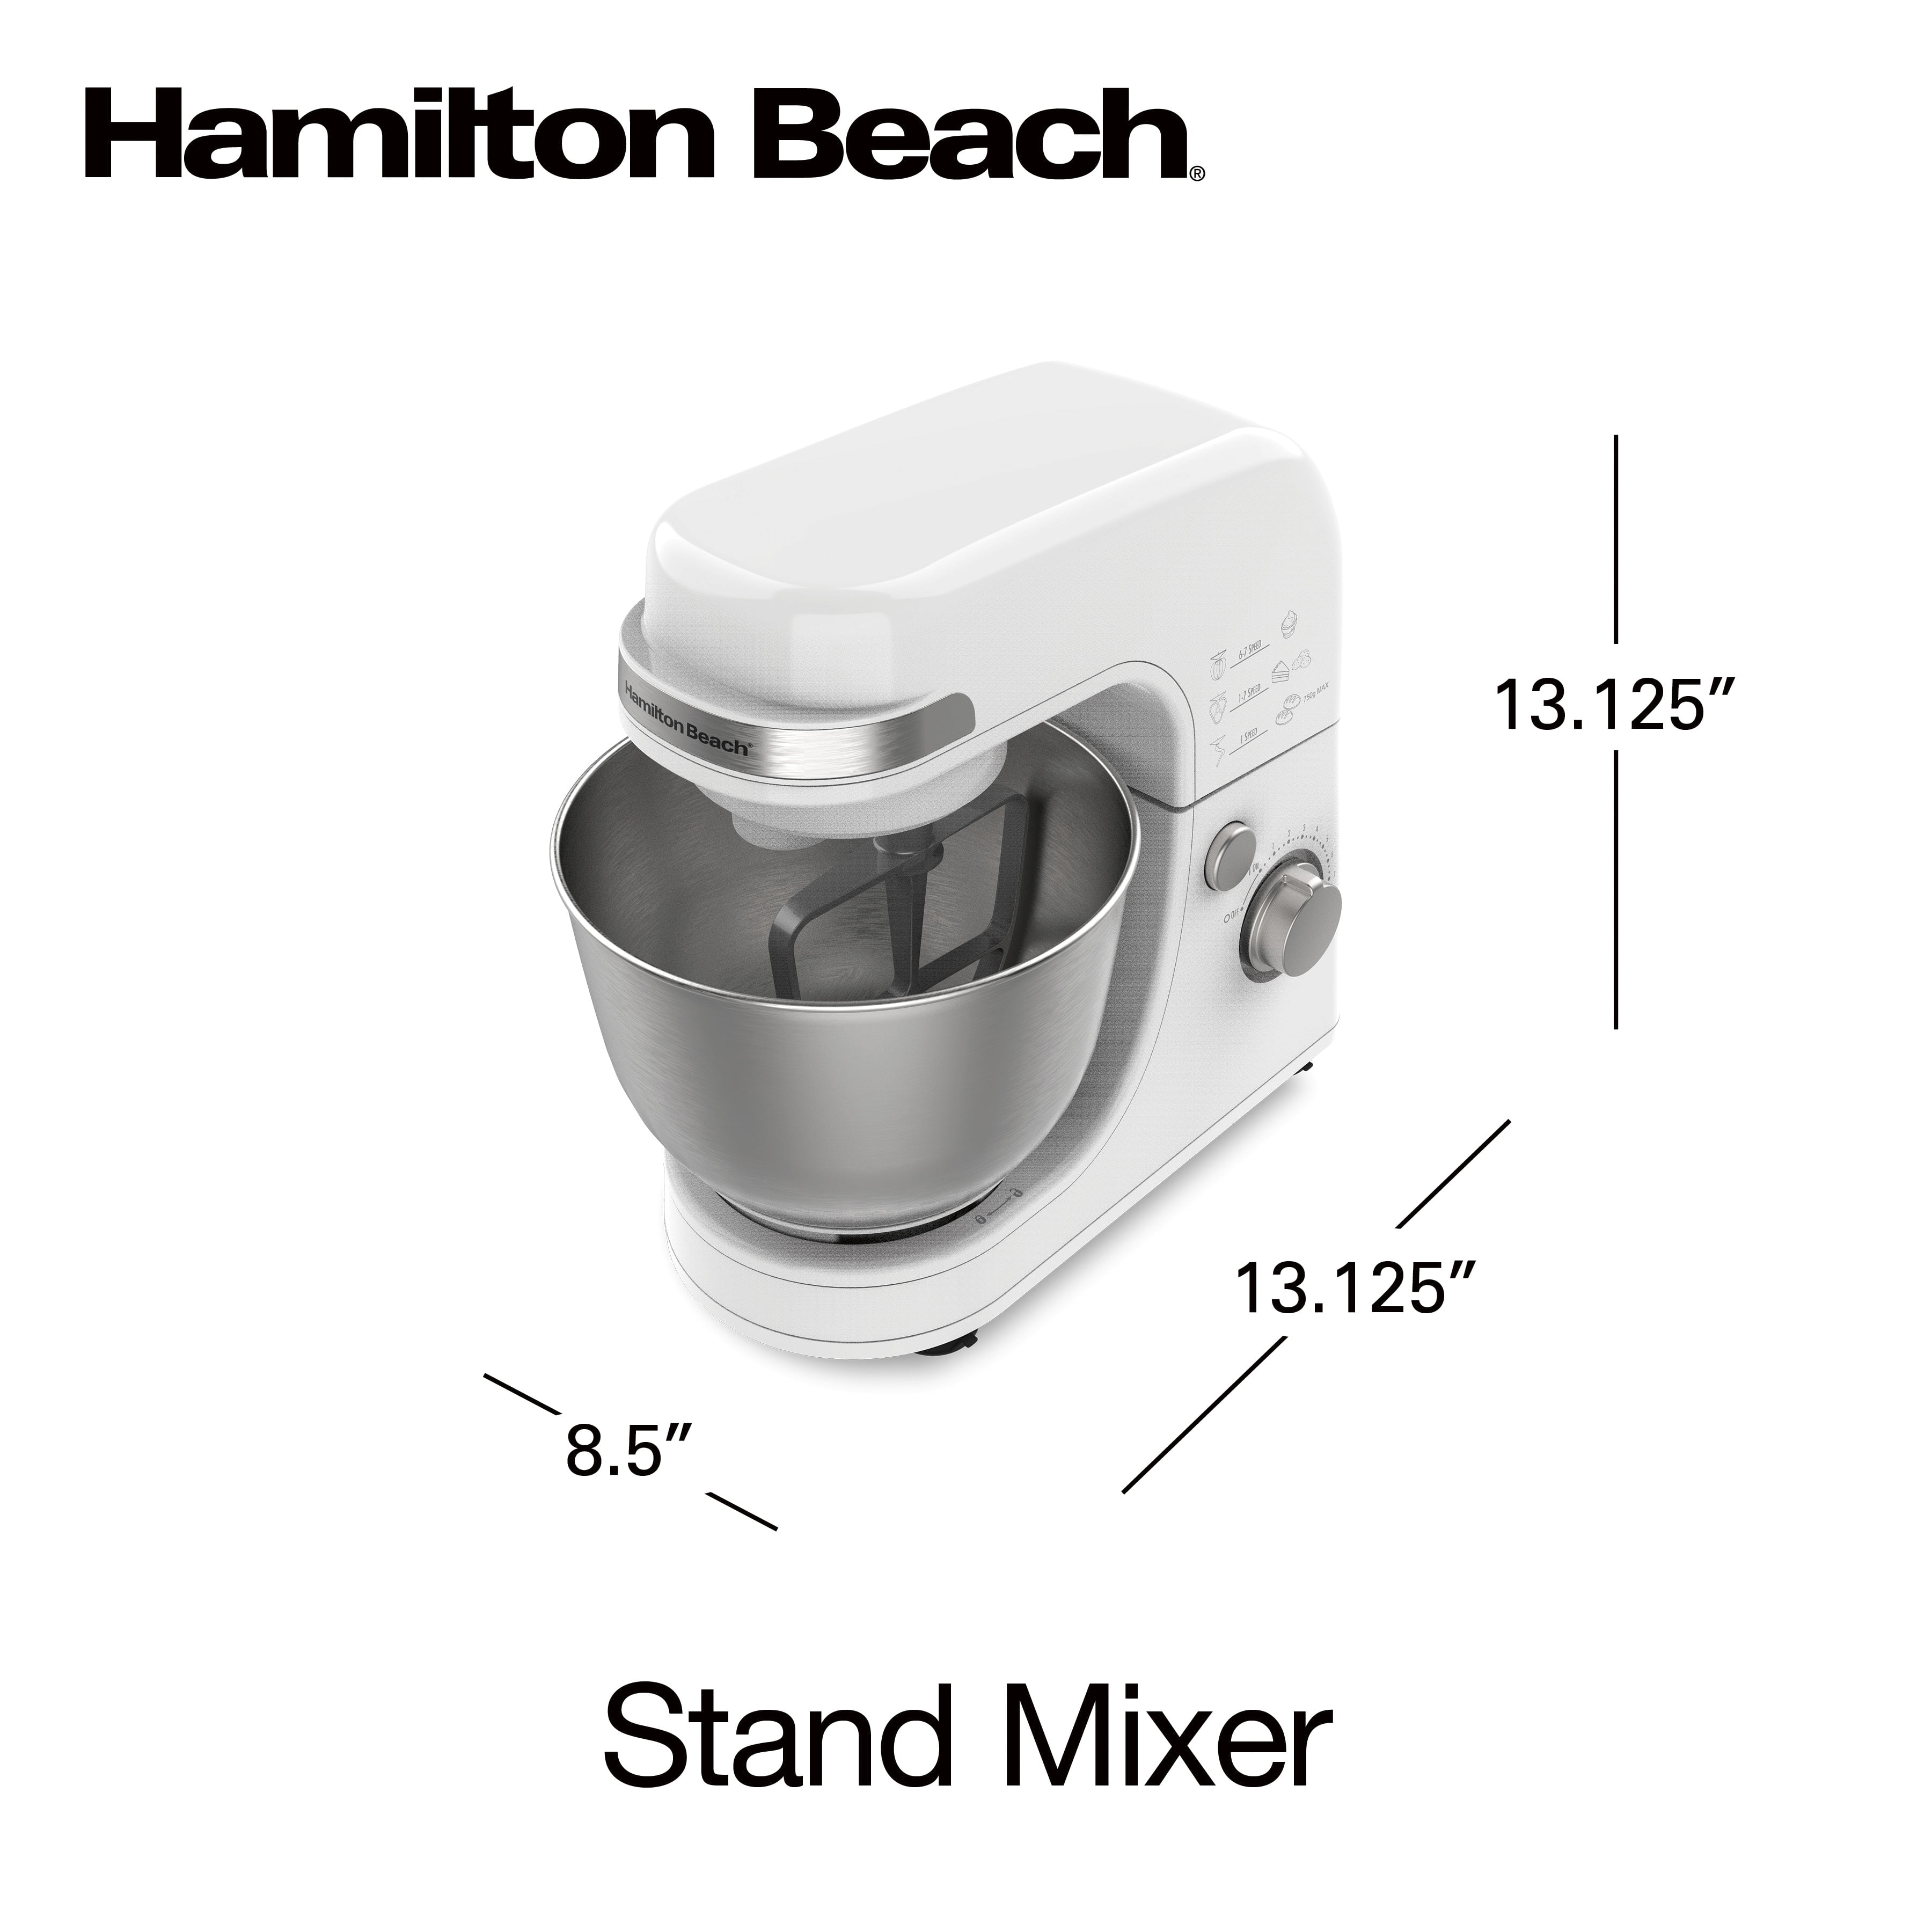 Hamilton Beach Stand Mixer - Callista's Ramblings